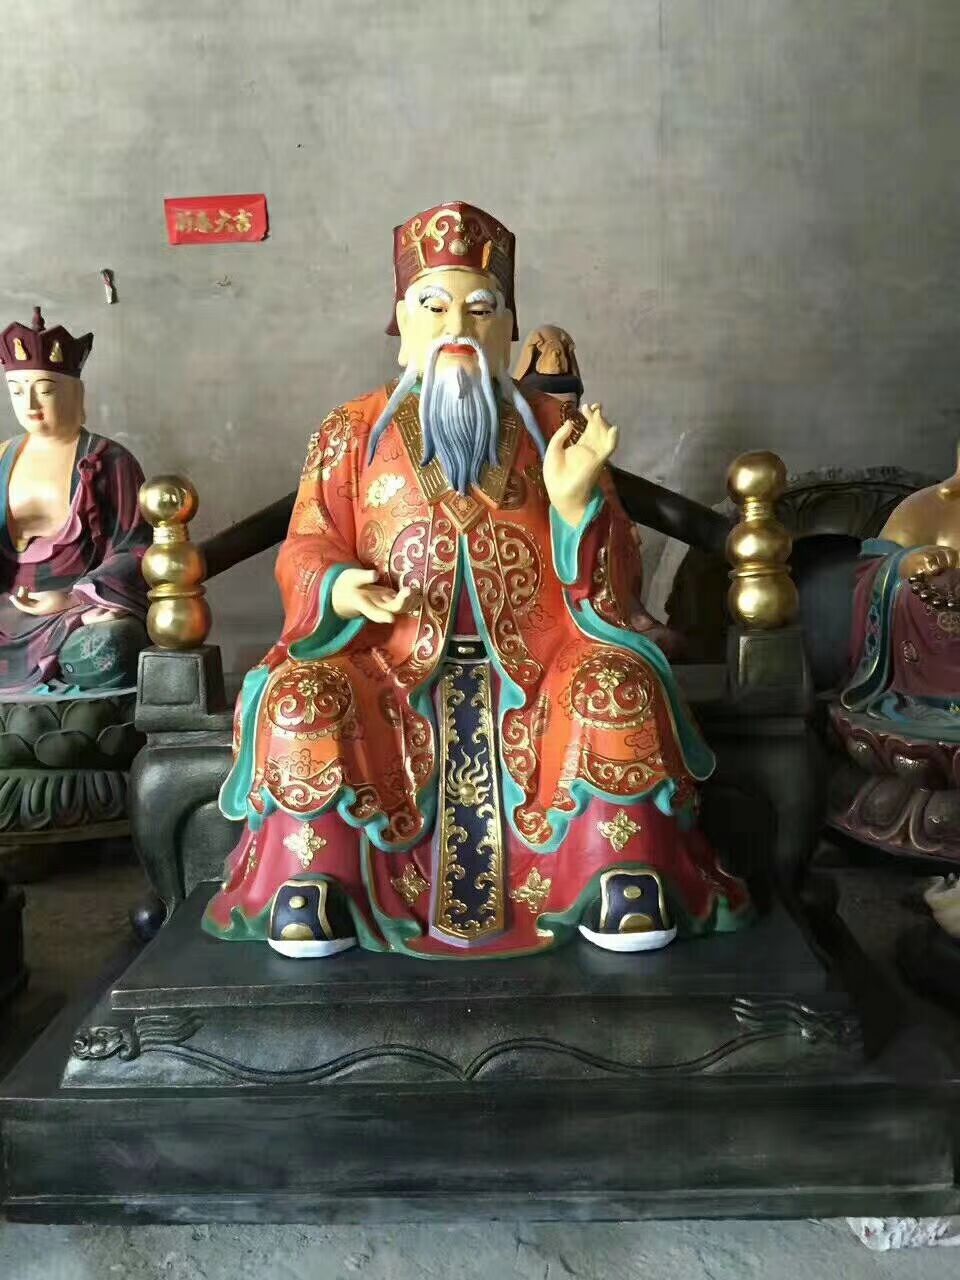 神像 温州慈宏法器供应彩绘三官大帝神像 十殿阎王神像 十殿阎王神像图片